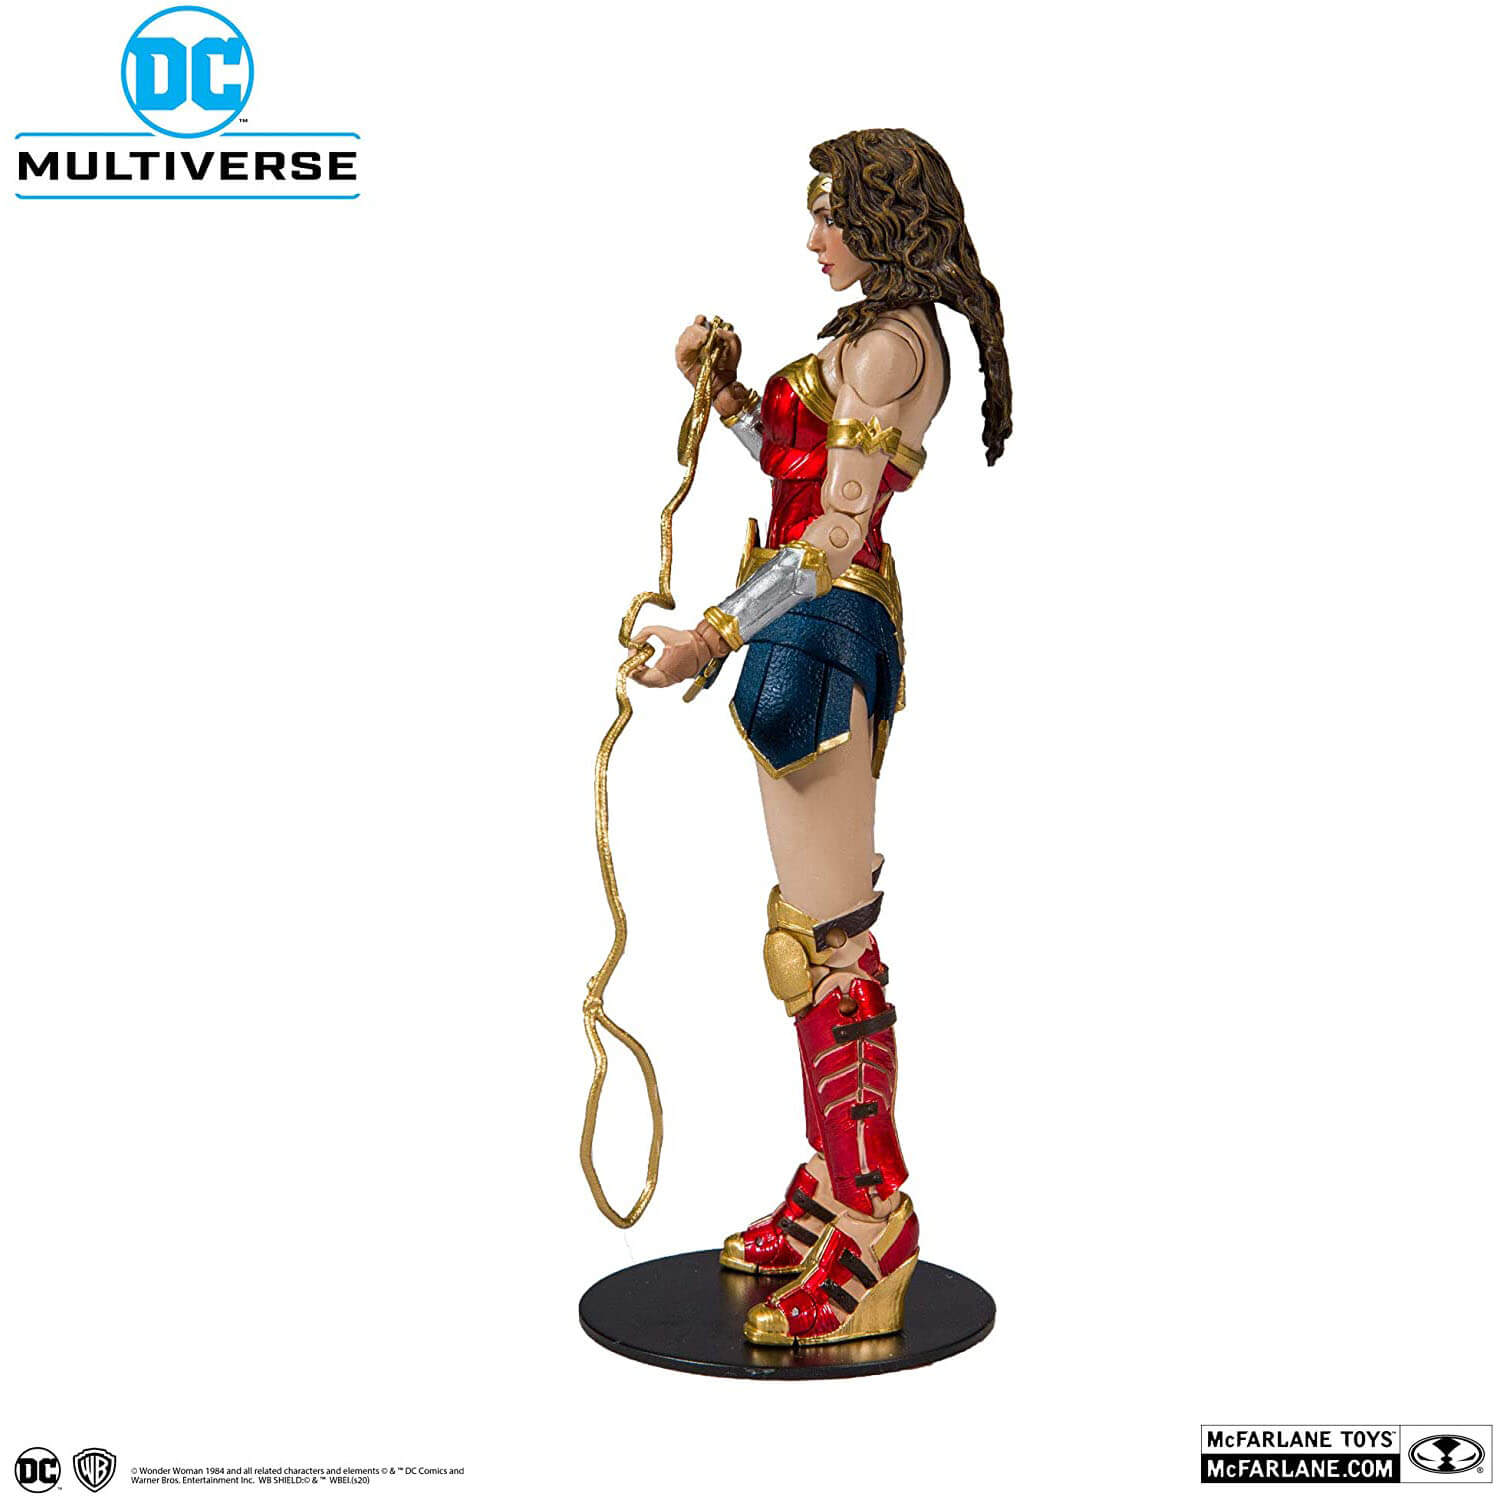 DC Multiverse Wonder Woman 1984 Action Figure